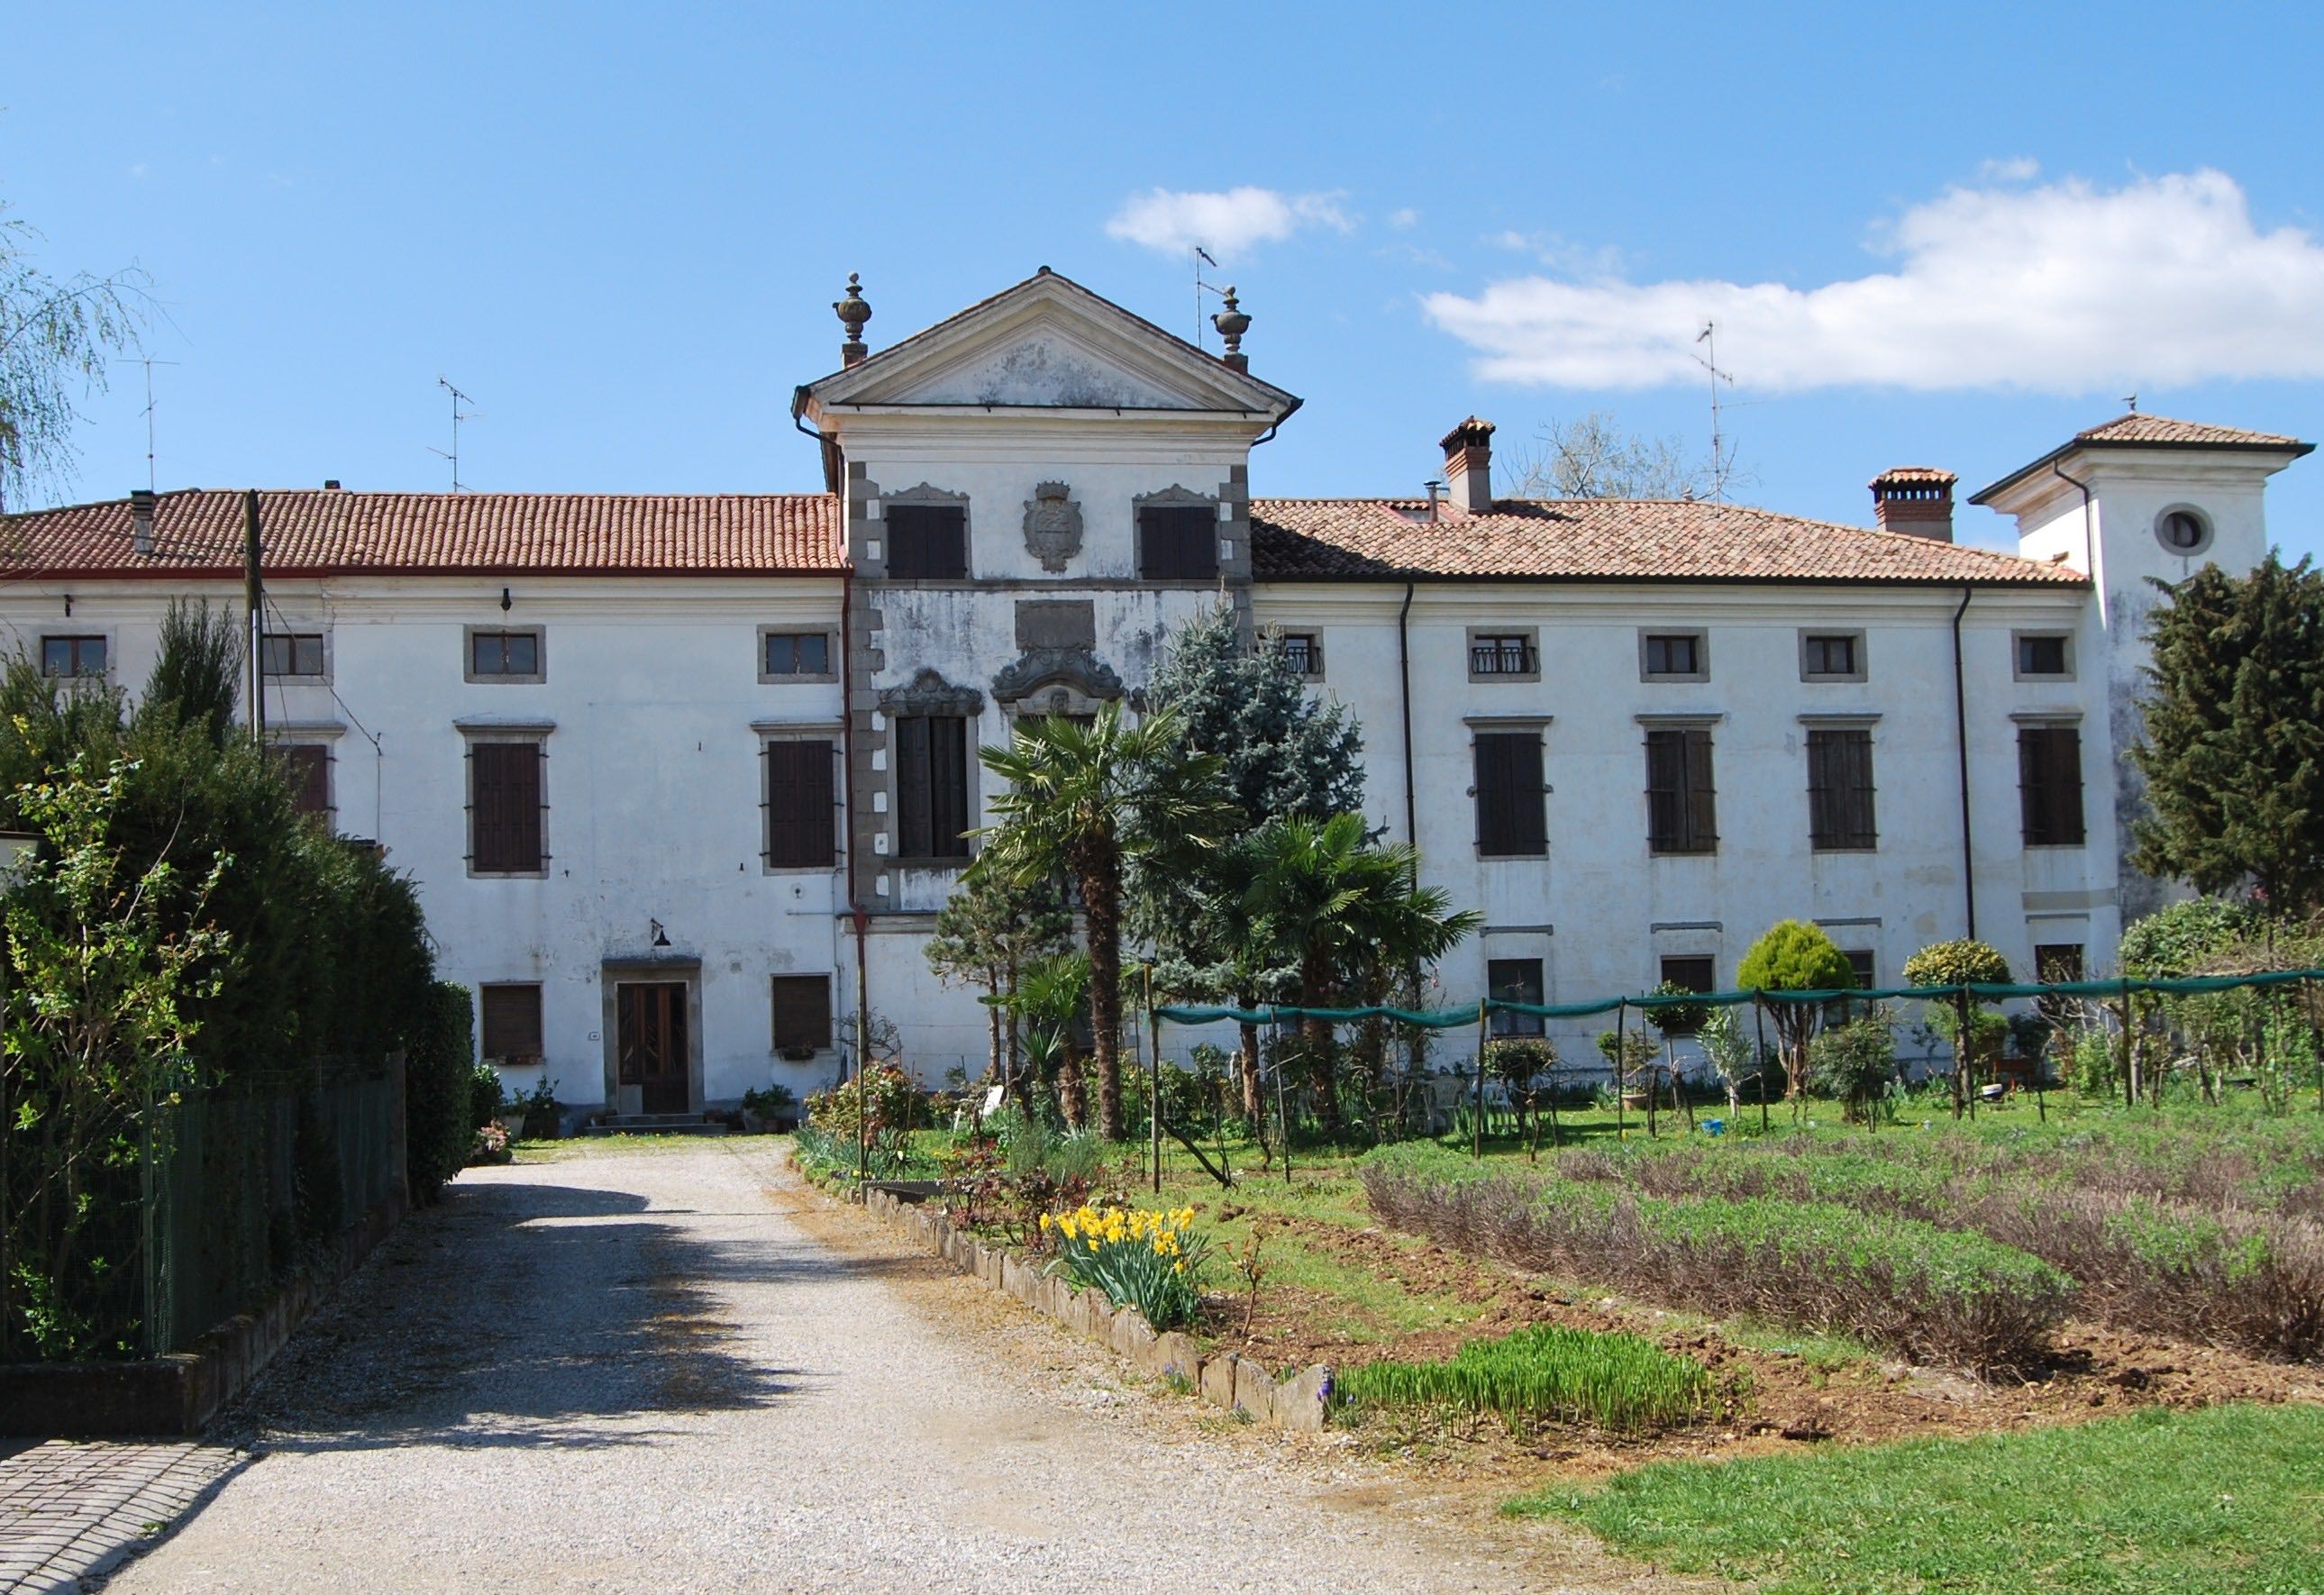 Villa Ottelio – Manzano (Ud)